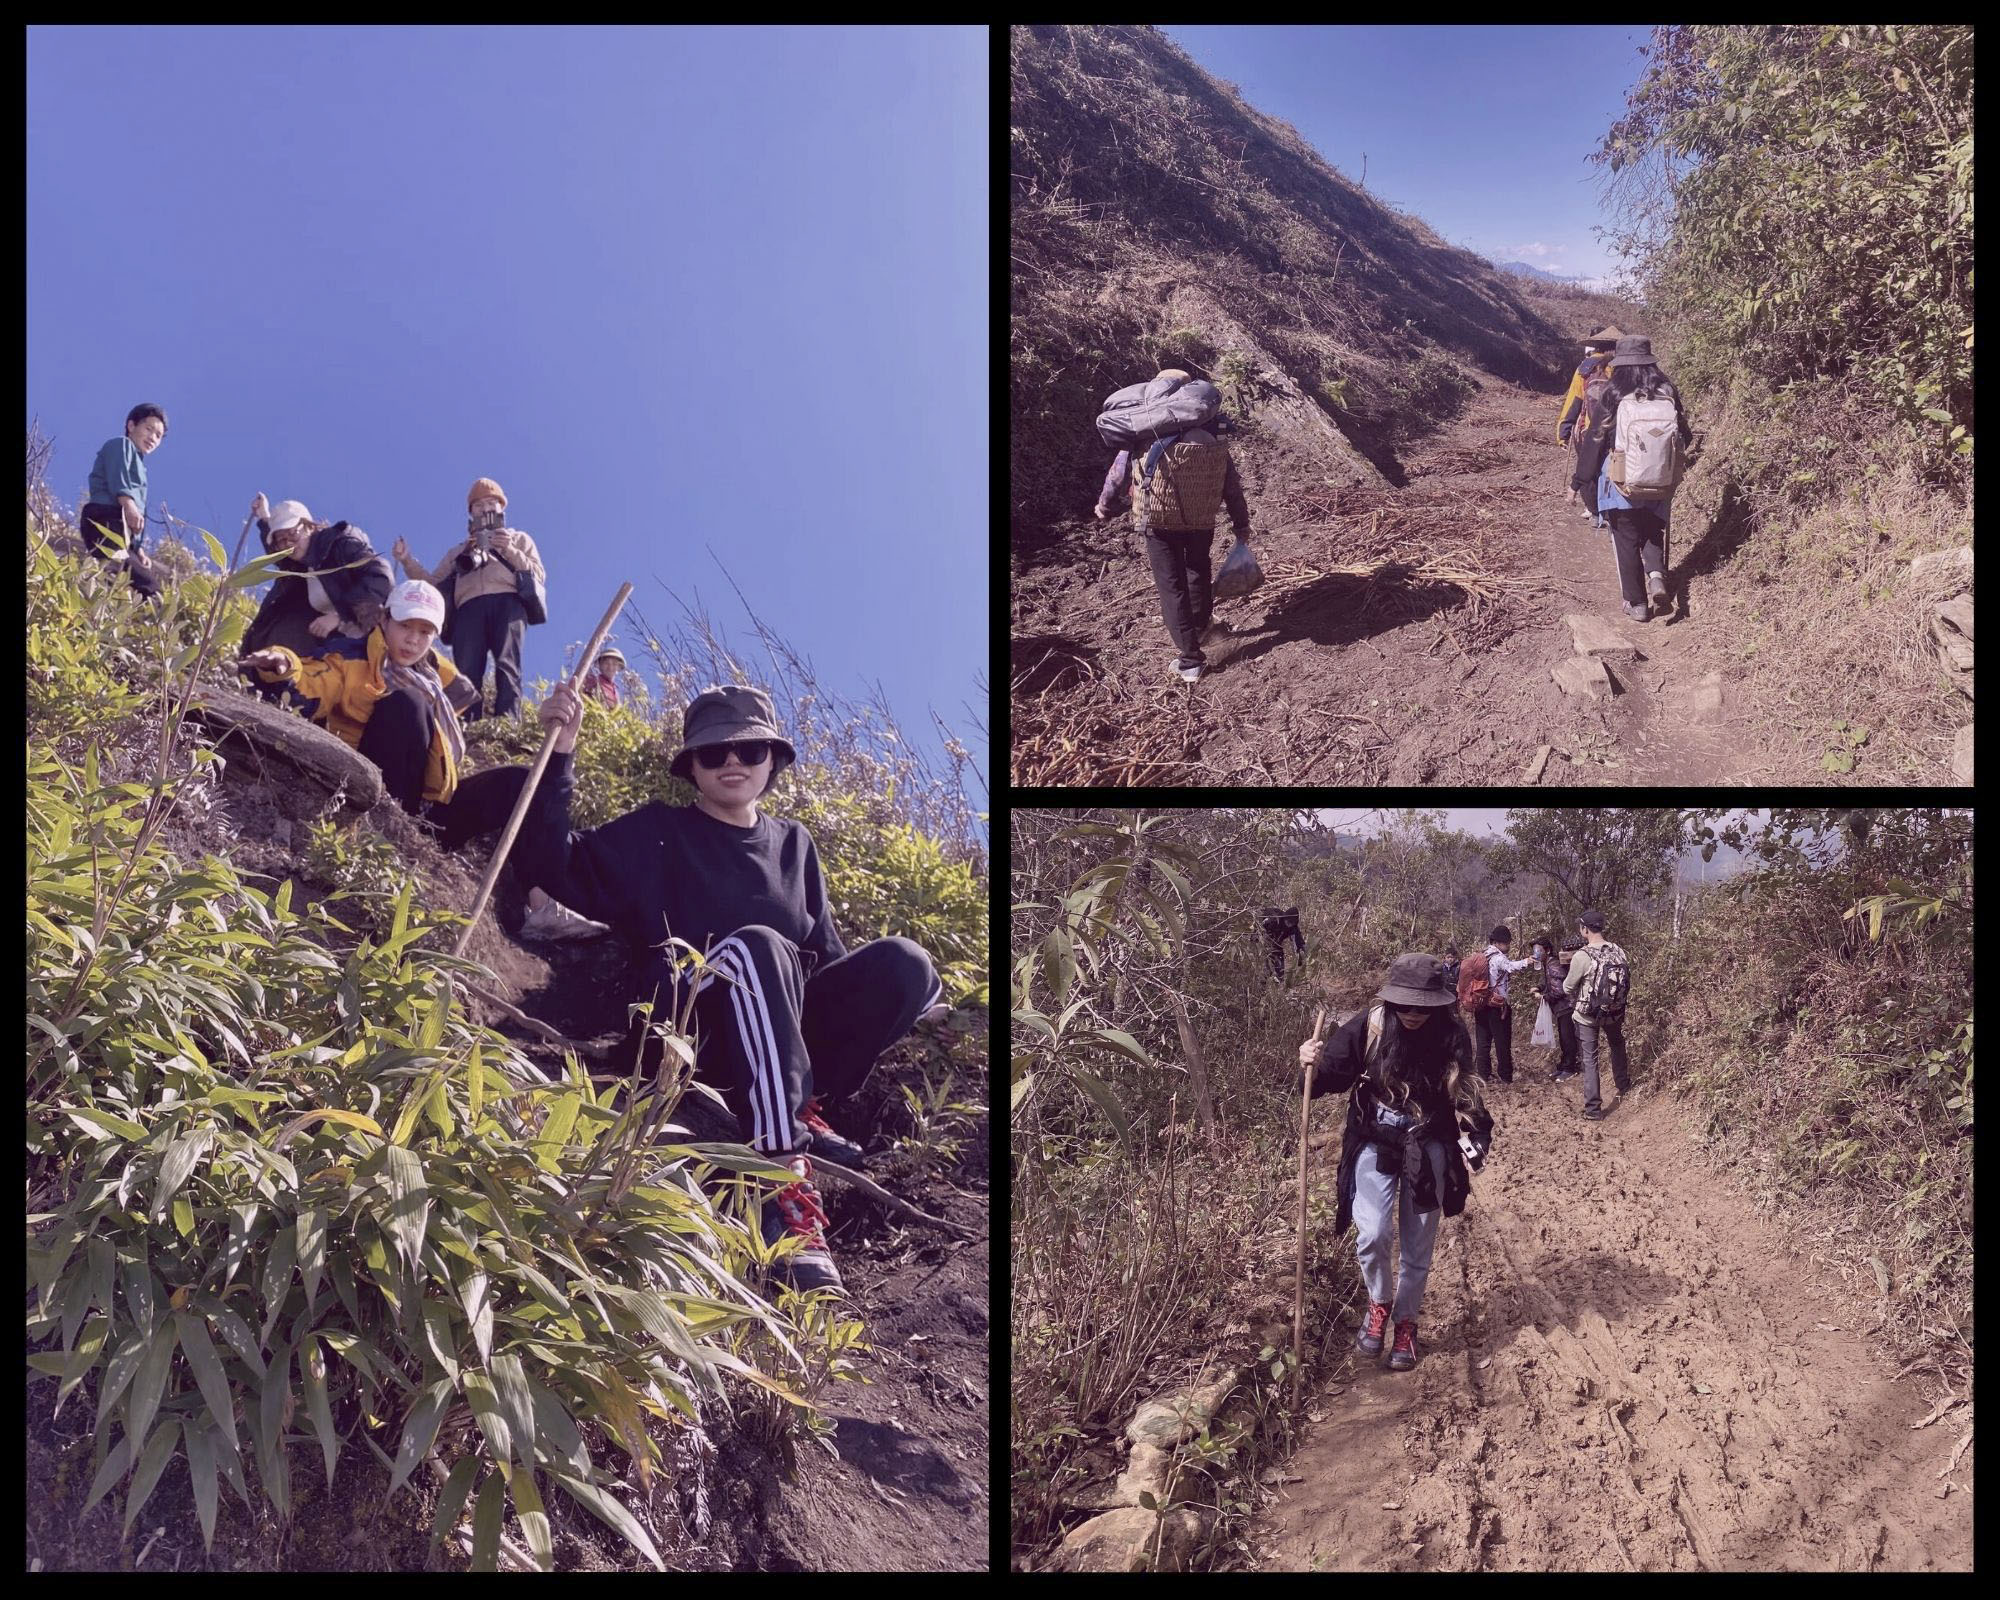 Hành trình chinh phục đỉnh núi cao gần 3.000m của những cô gái đến từ Hà Nội - Ảnh 4.